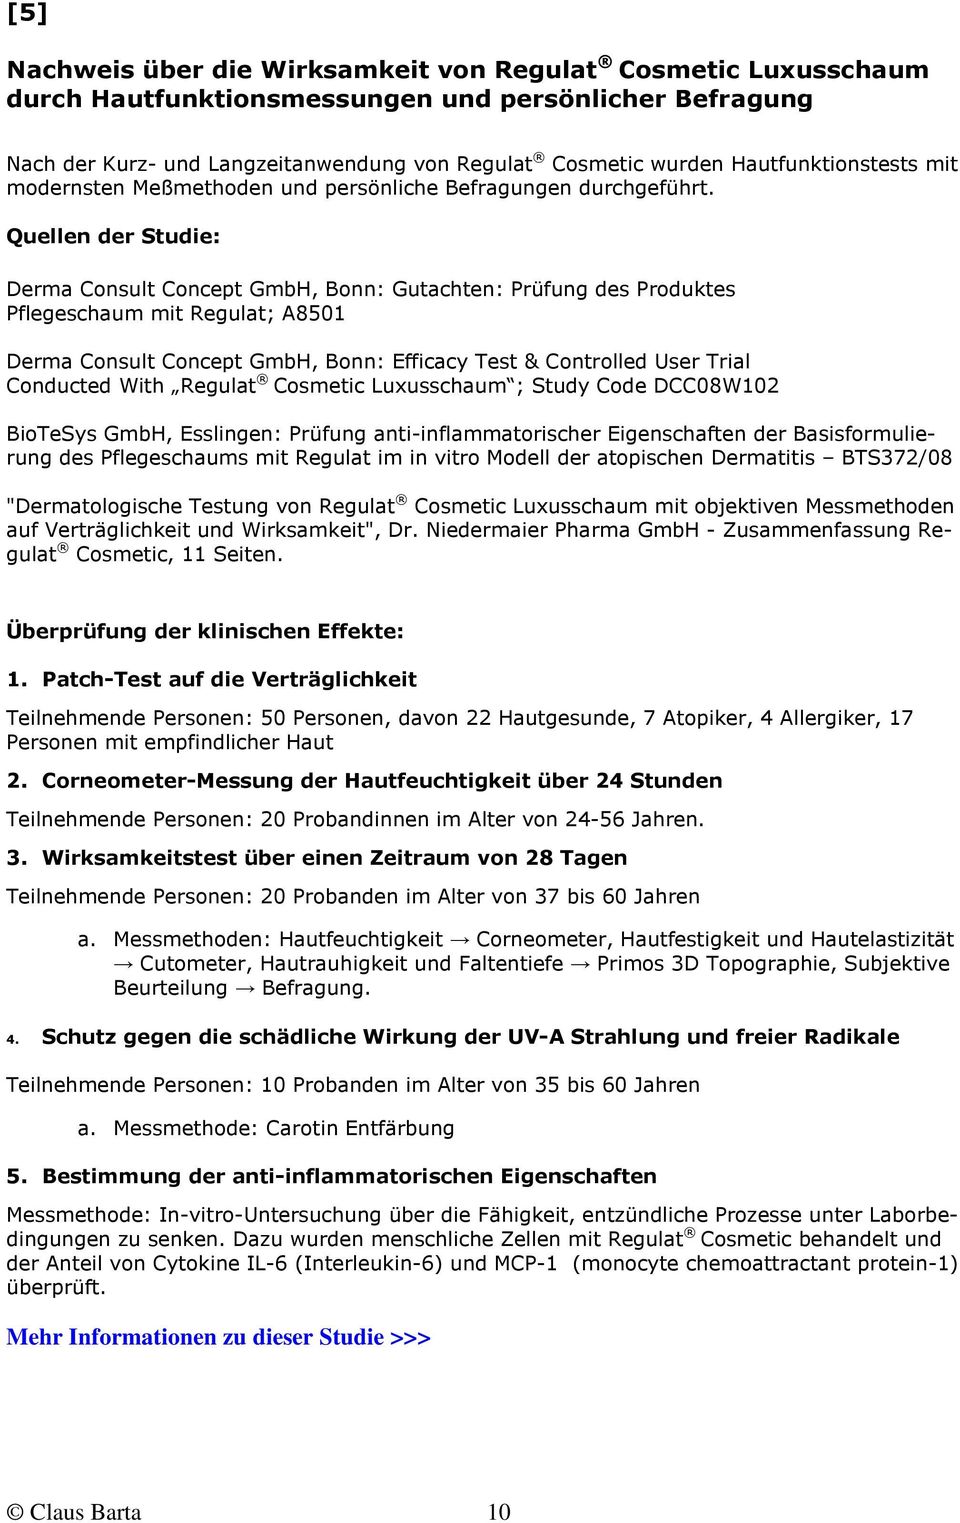 Quellen der Studie: Derma Consult Concept GmbH, Bonn: Gutachten: Prüfung des Produktes Pflegeschaum mit Regulat; A8501 Derma Consult Concept GmbH, Bonn: Efficacy Test & Controlled User Trial